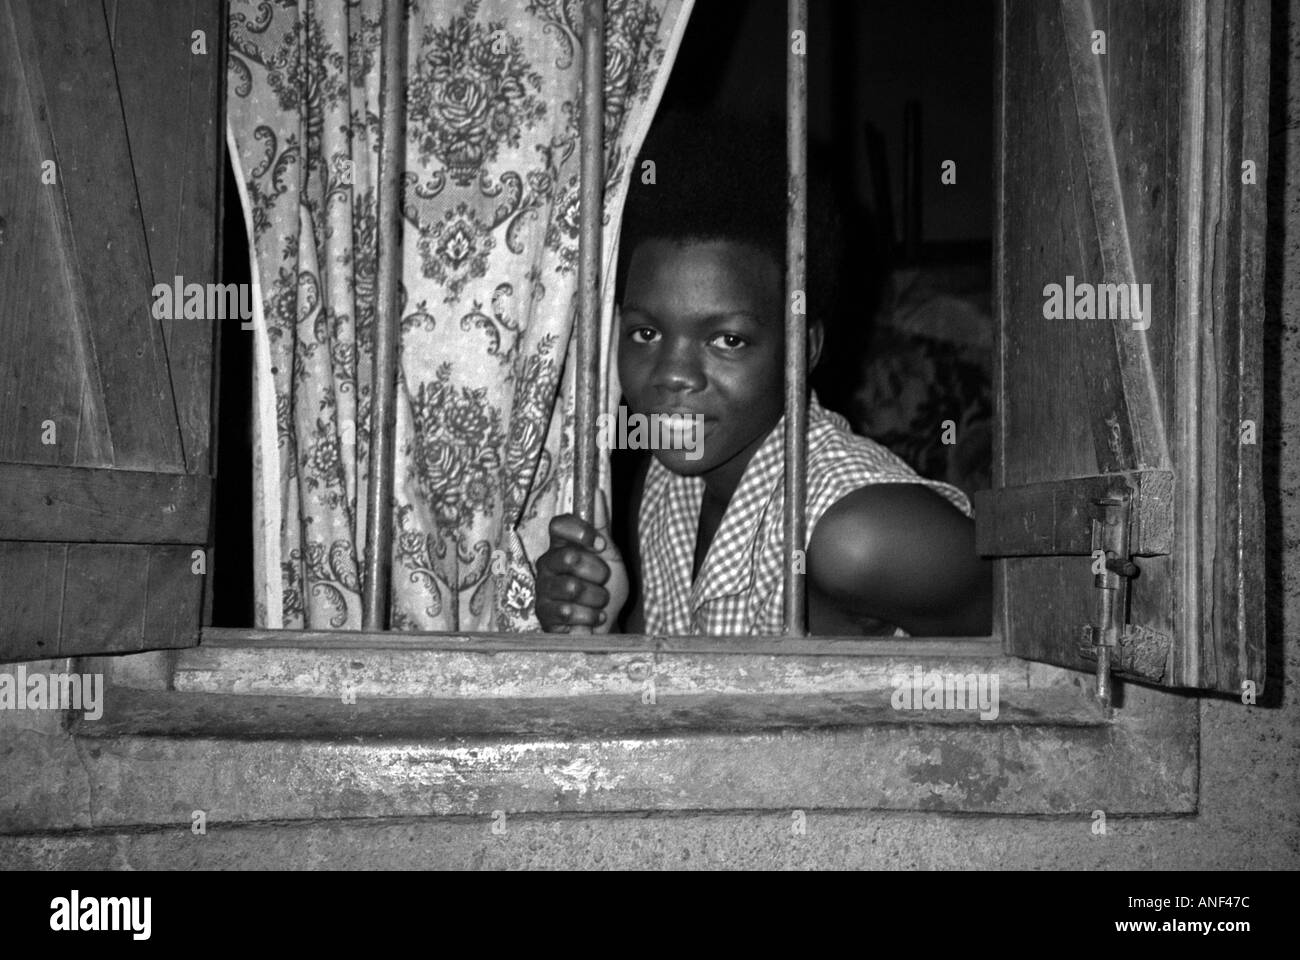 Souriante jeune femme du bidonville d'Acholy quart à la fenêtre de sa cabane en bois Kampala Ouganda Afrique de l'Est Banque D'Images